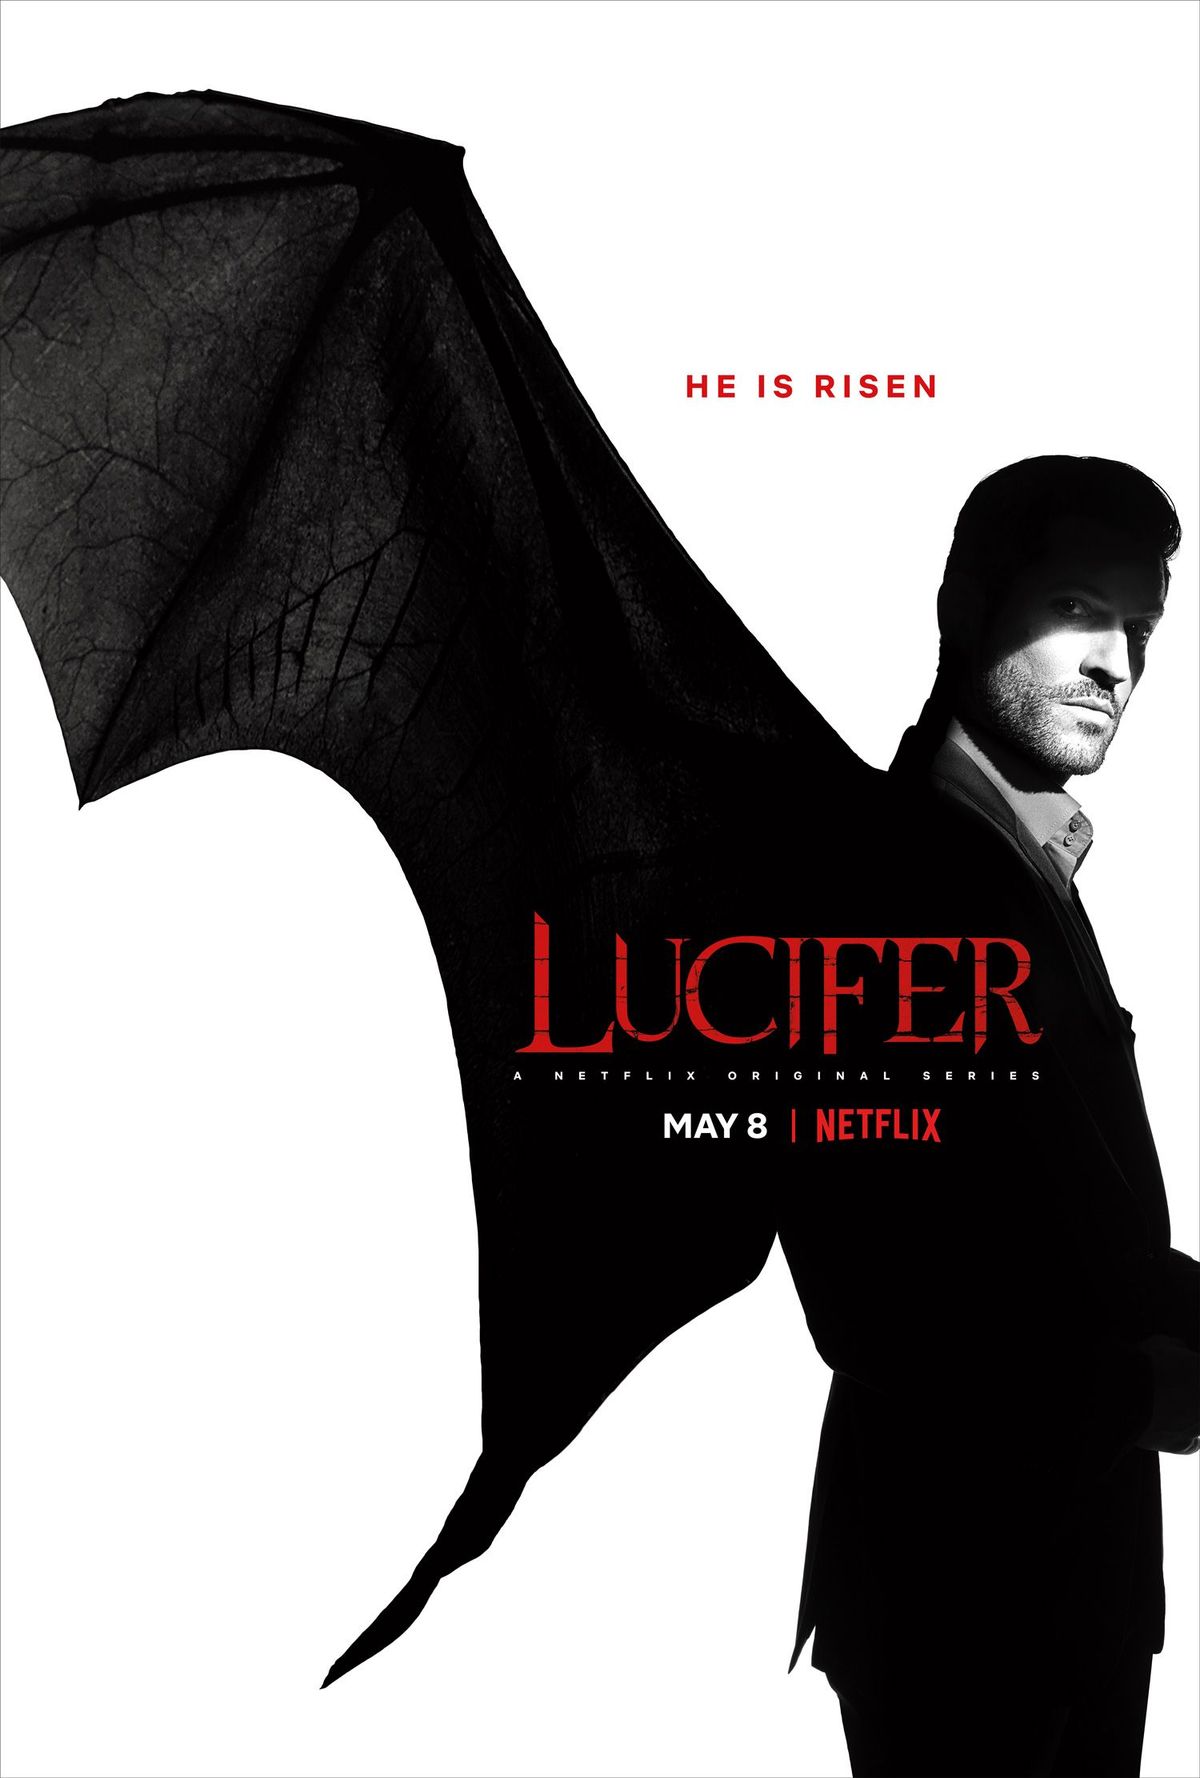 La promo de la saison 4 de Lucifer révèle beaucoup de peau – et la date de sortie